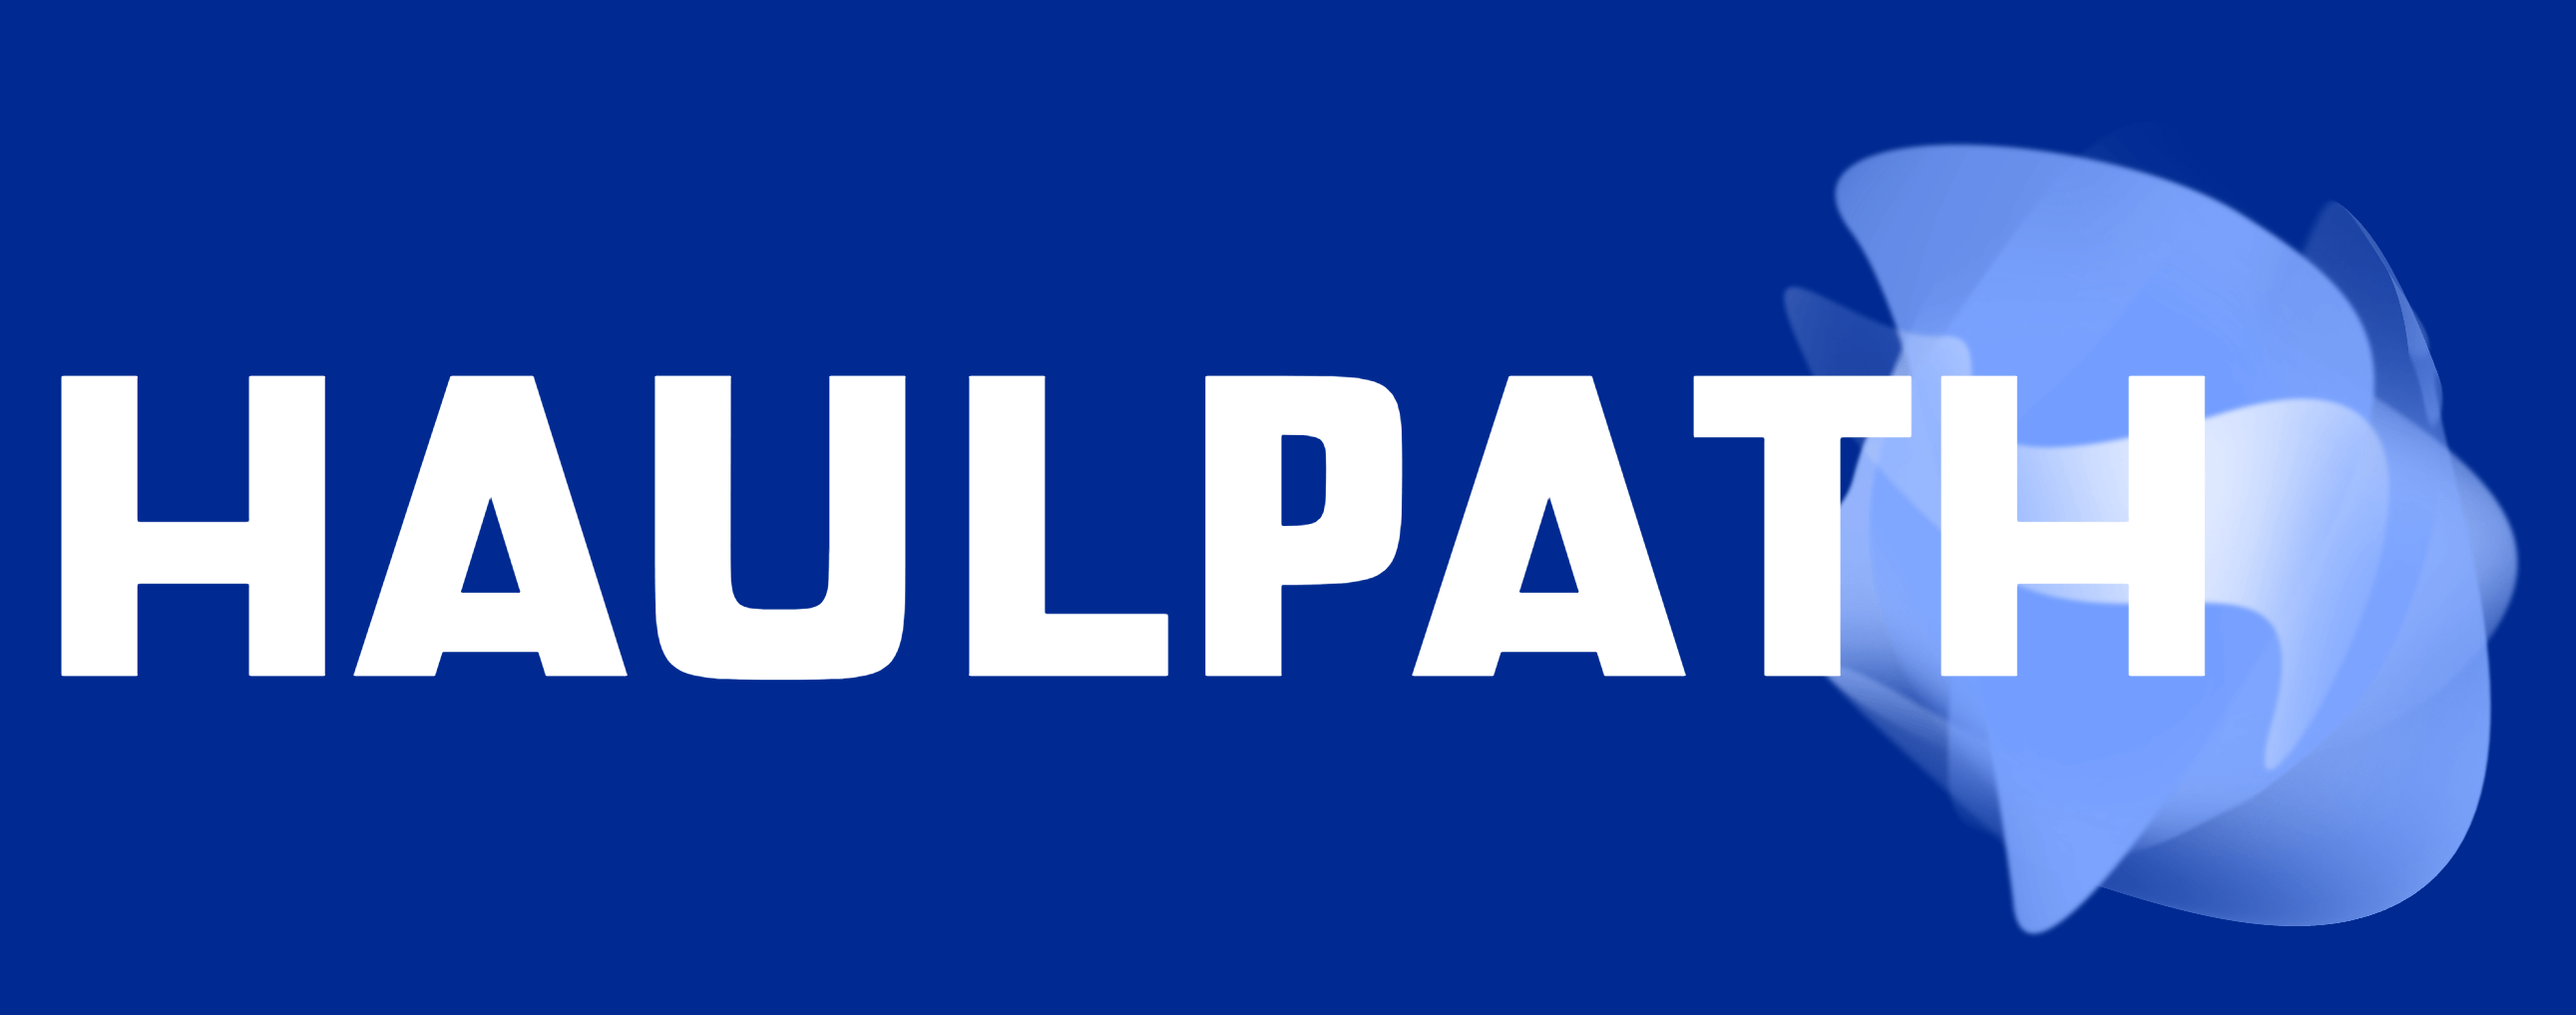 mobile logo blue